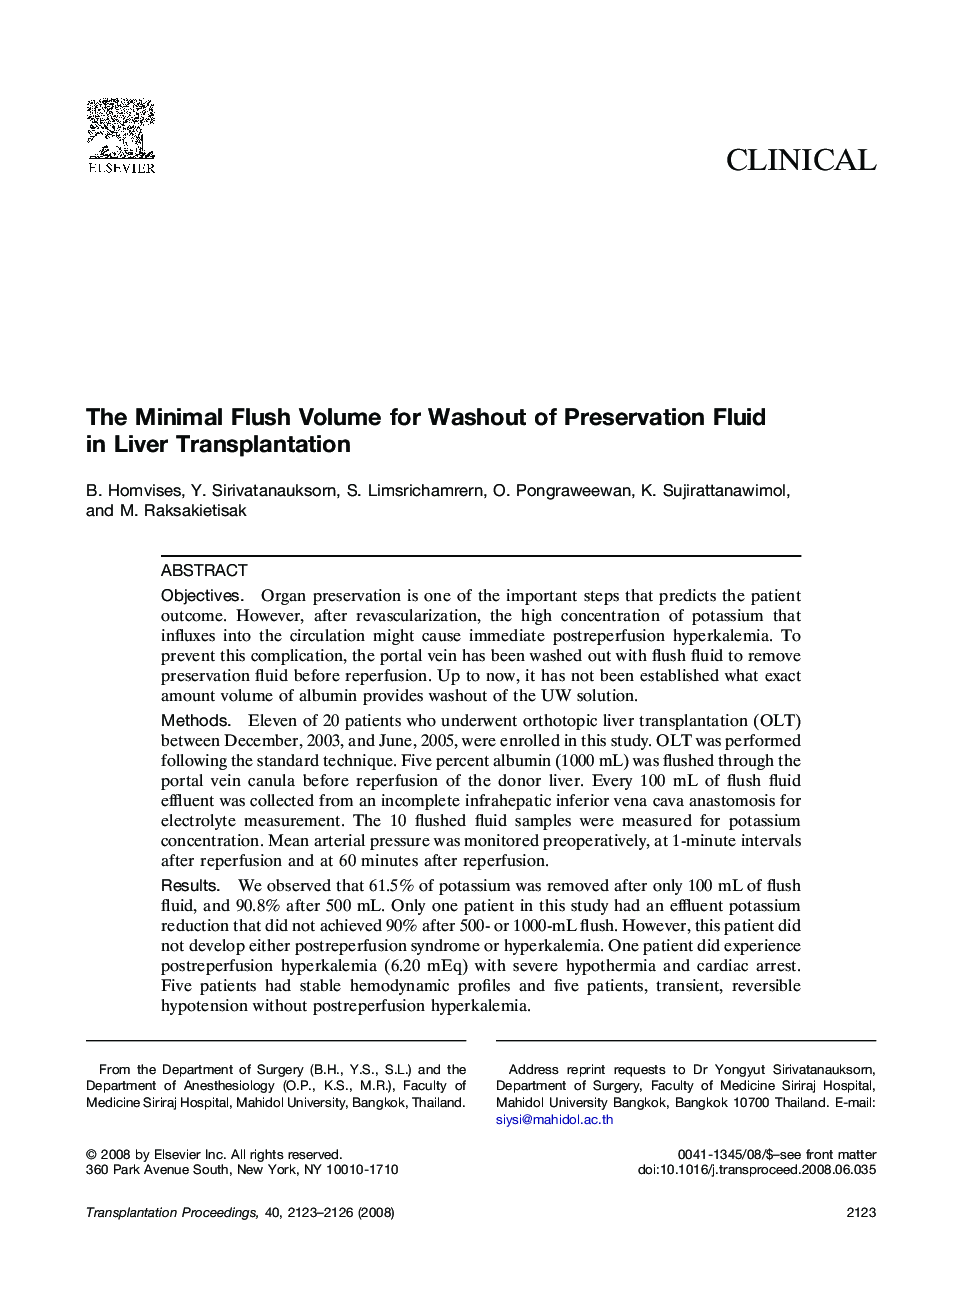 The Minimal Flush Volume for Washout of Preservation Fluid in Liver Transplantation